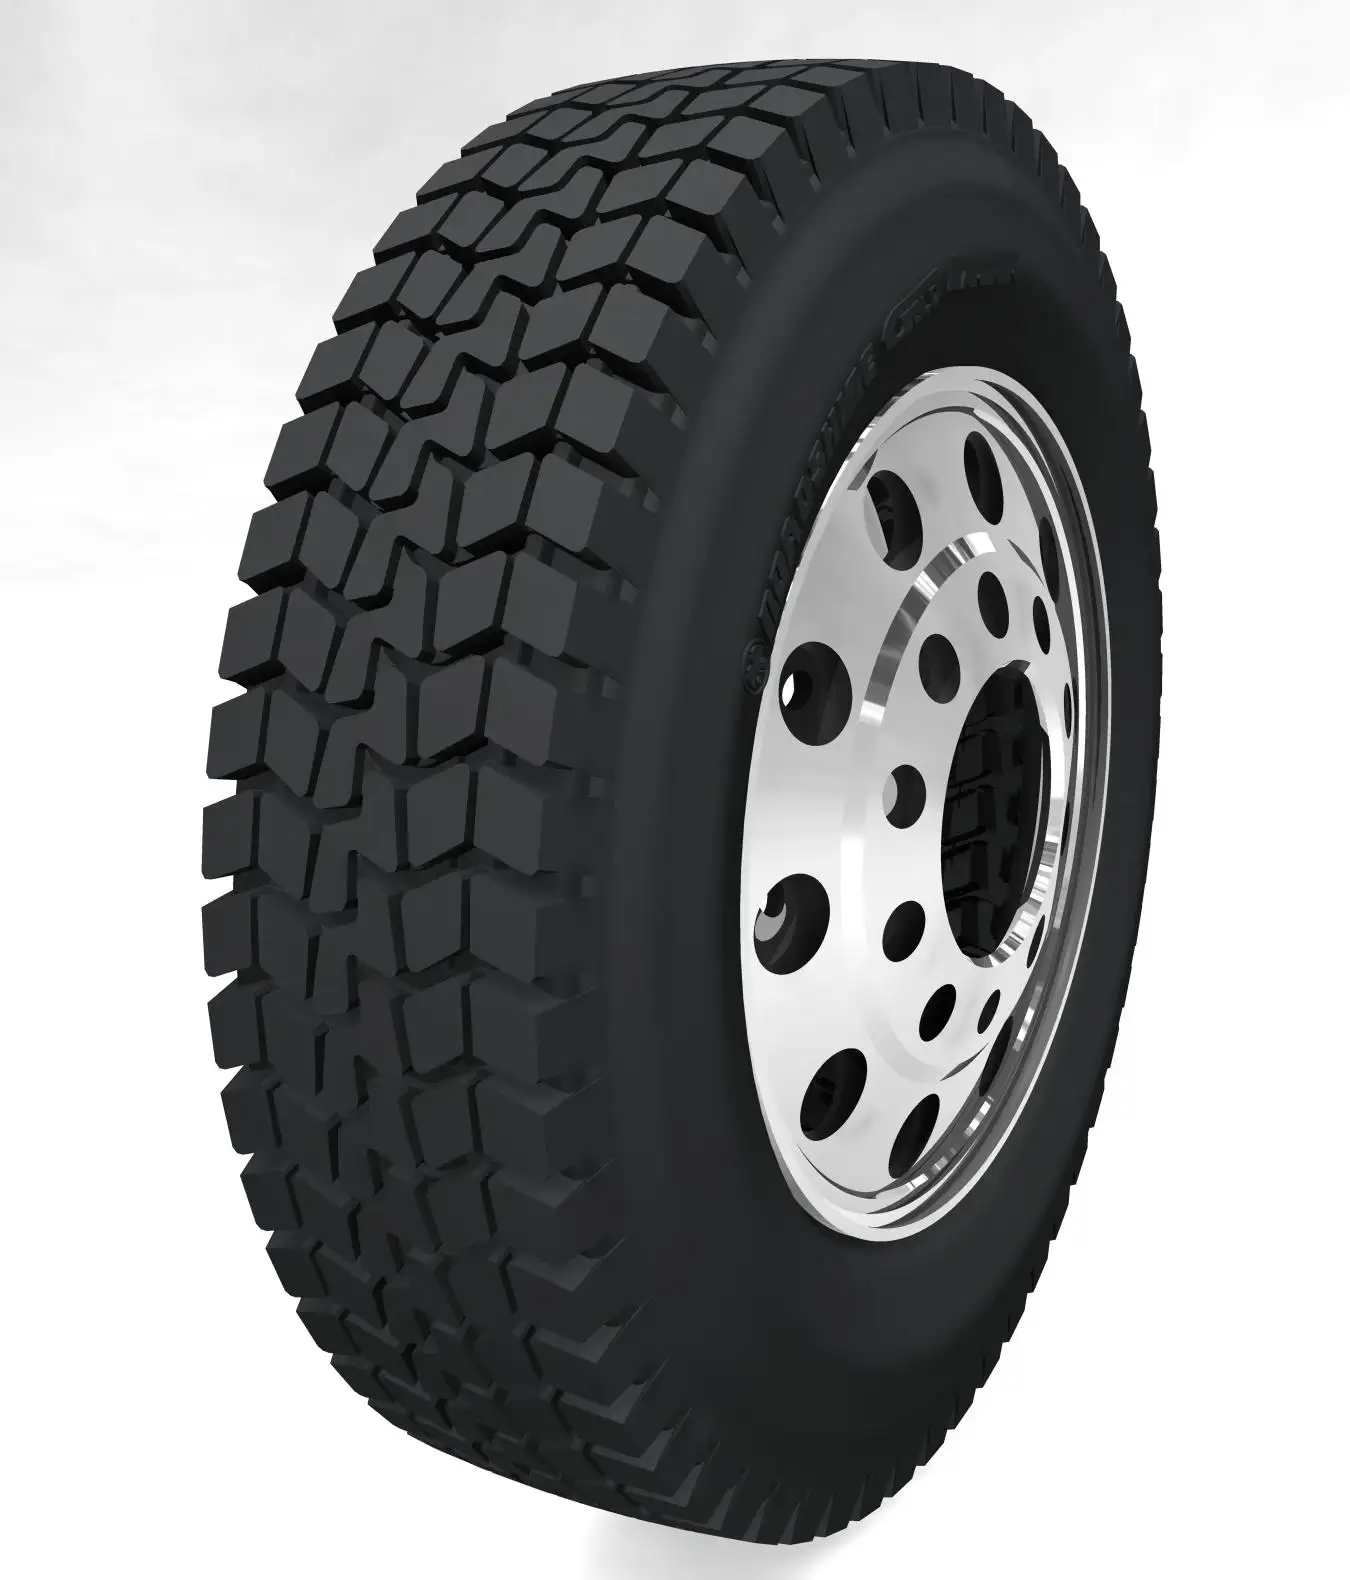 중고 트럭 타이어 중고 타이어 도매 가격 저렴한 고품질 생산 라인 트럭 타이어